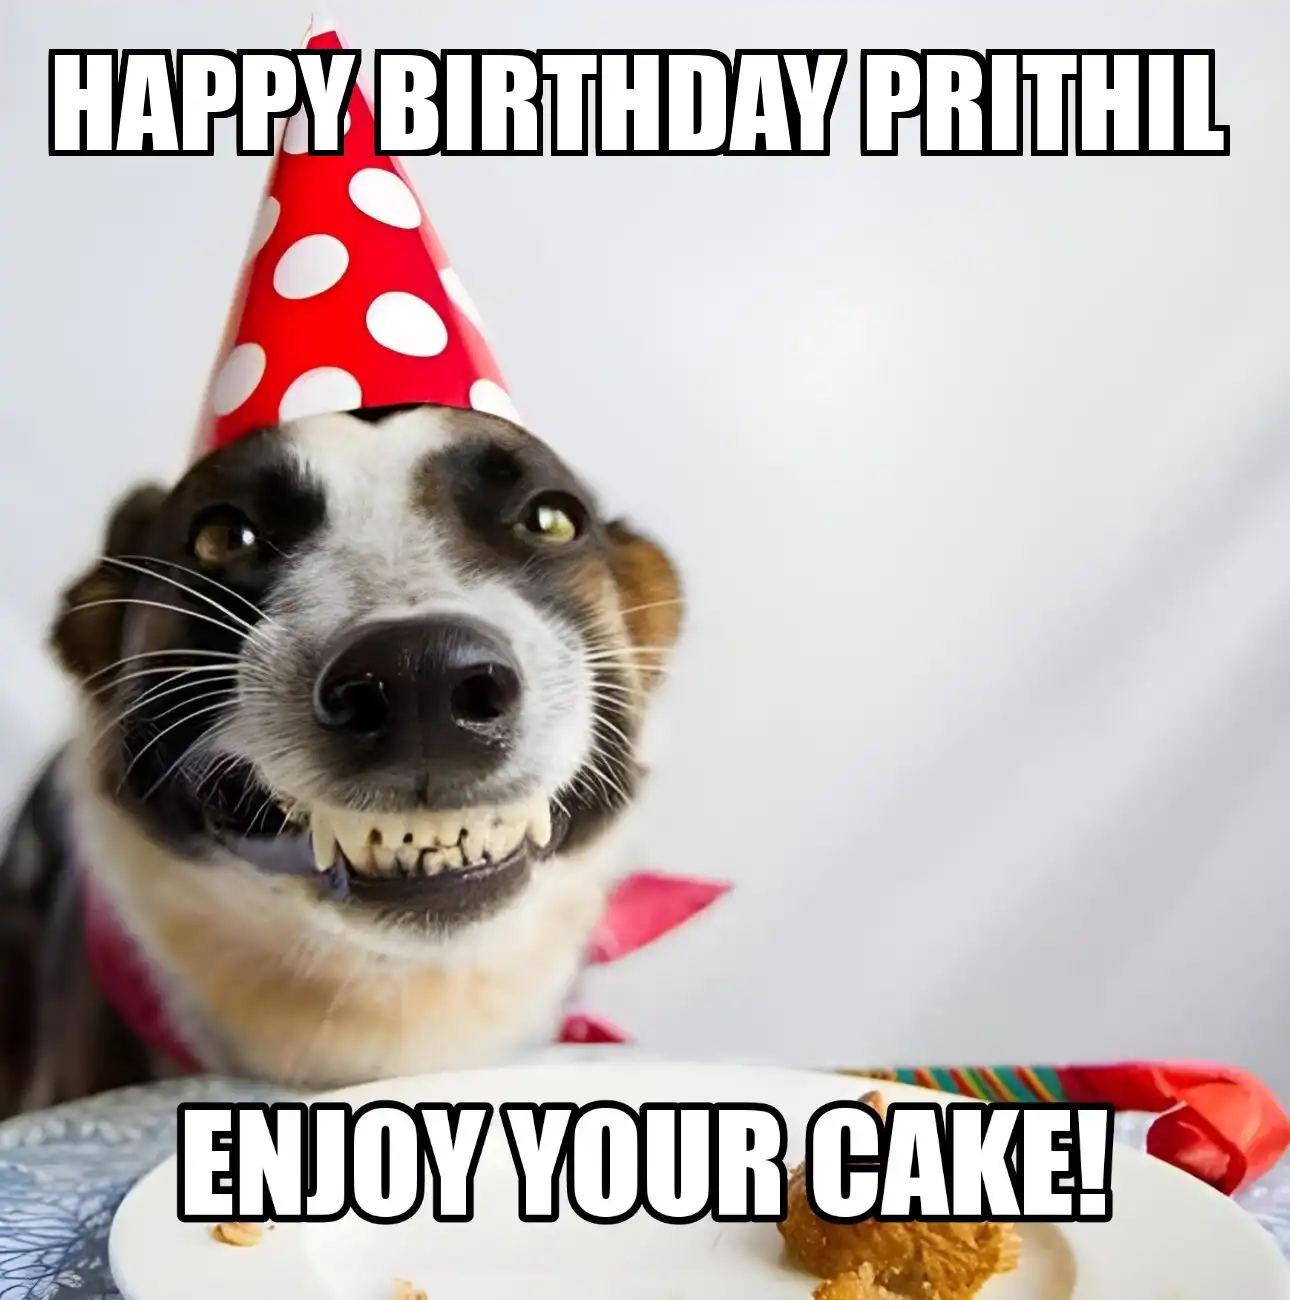 Happy Birthday Prithil Enjoy Your Cake Dog Meme